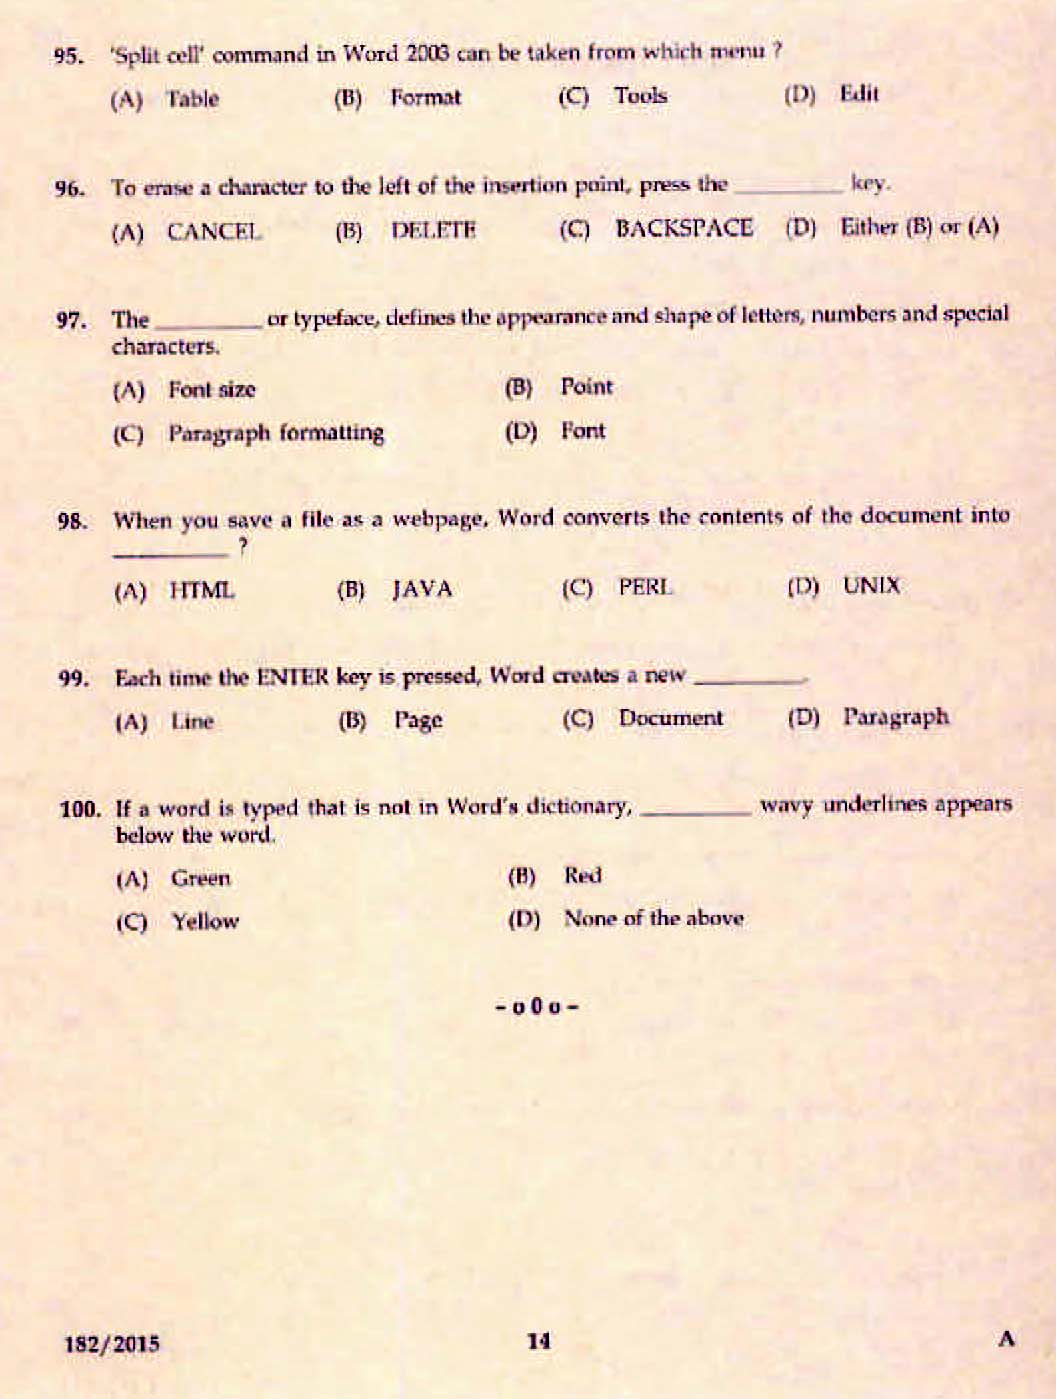 Kerala PSC Confidential Assistant Grade II Exam 2015 Question Paper Code 1822015 12